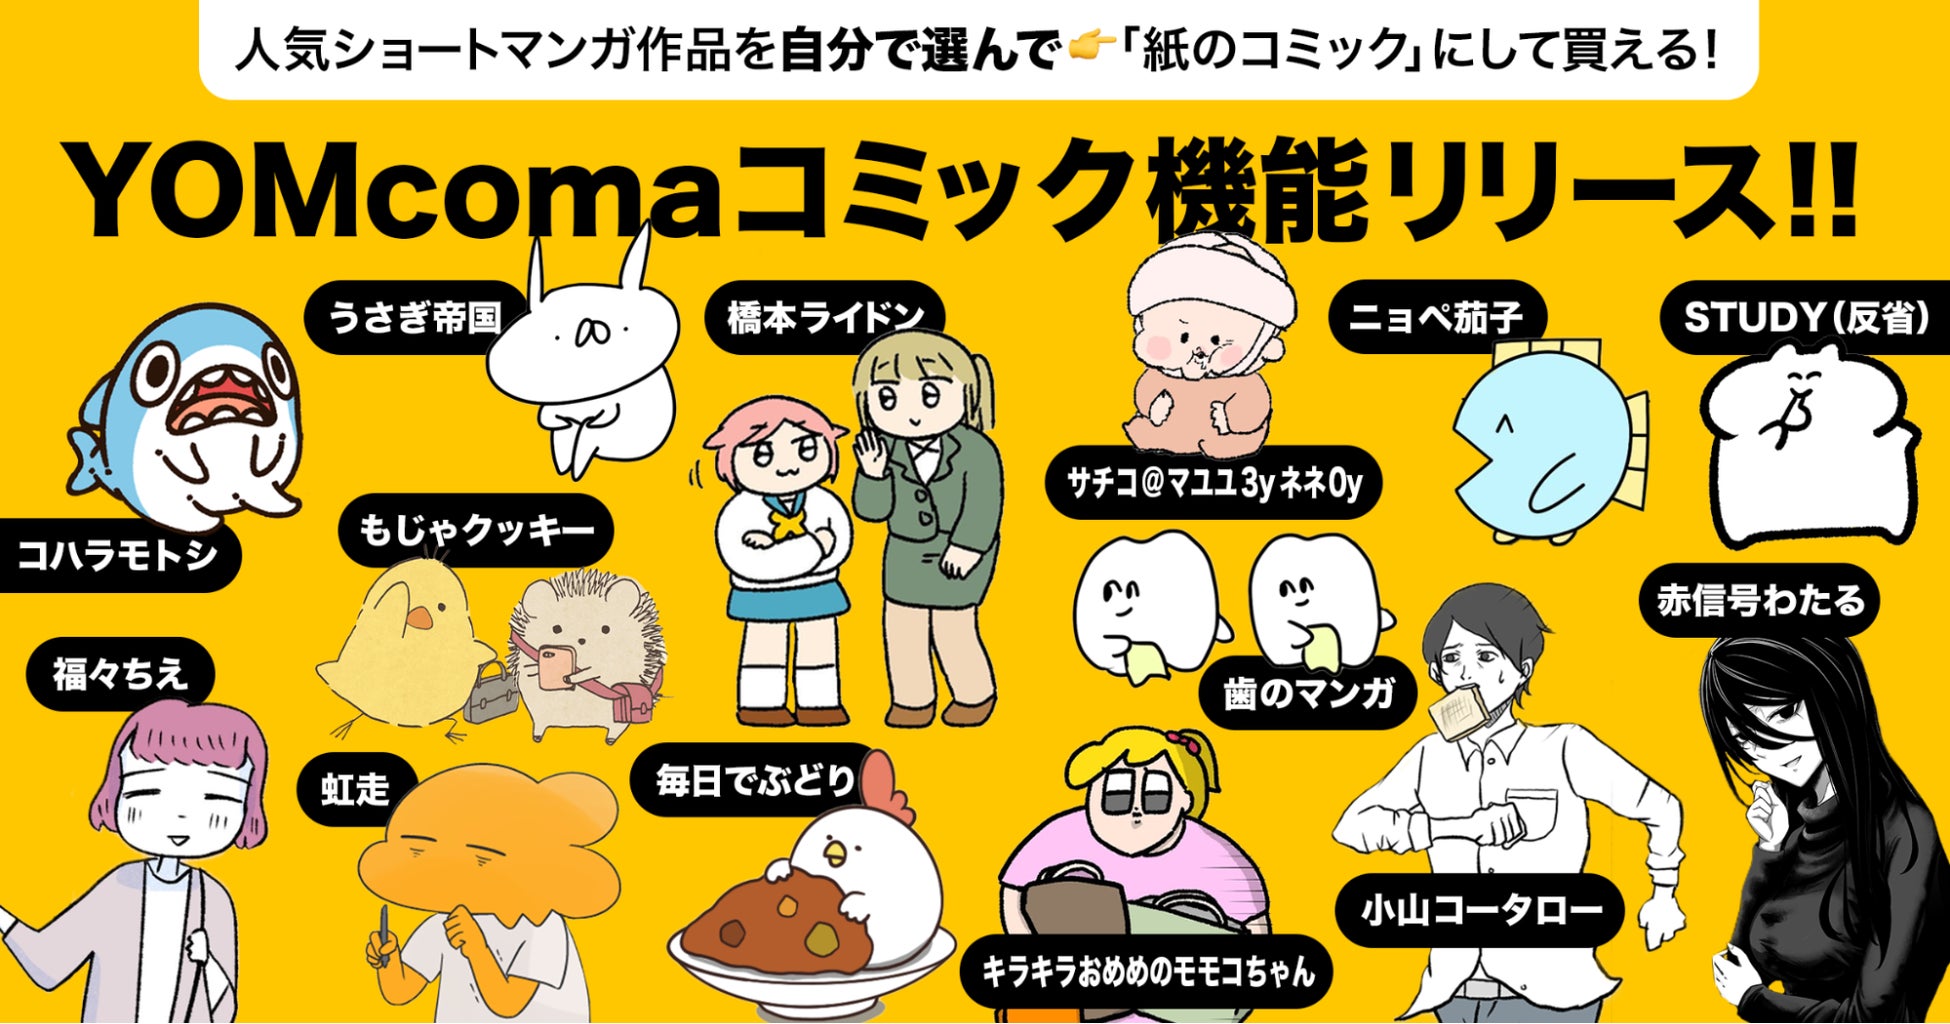 ショートマンガ創作支援サービス「YOMcoma」収益還元を行う新機能「YOMcomaコミック」をリリース